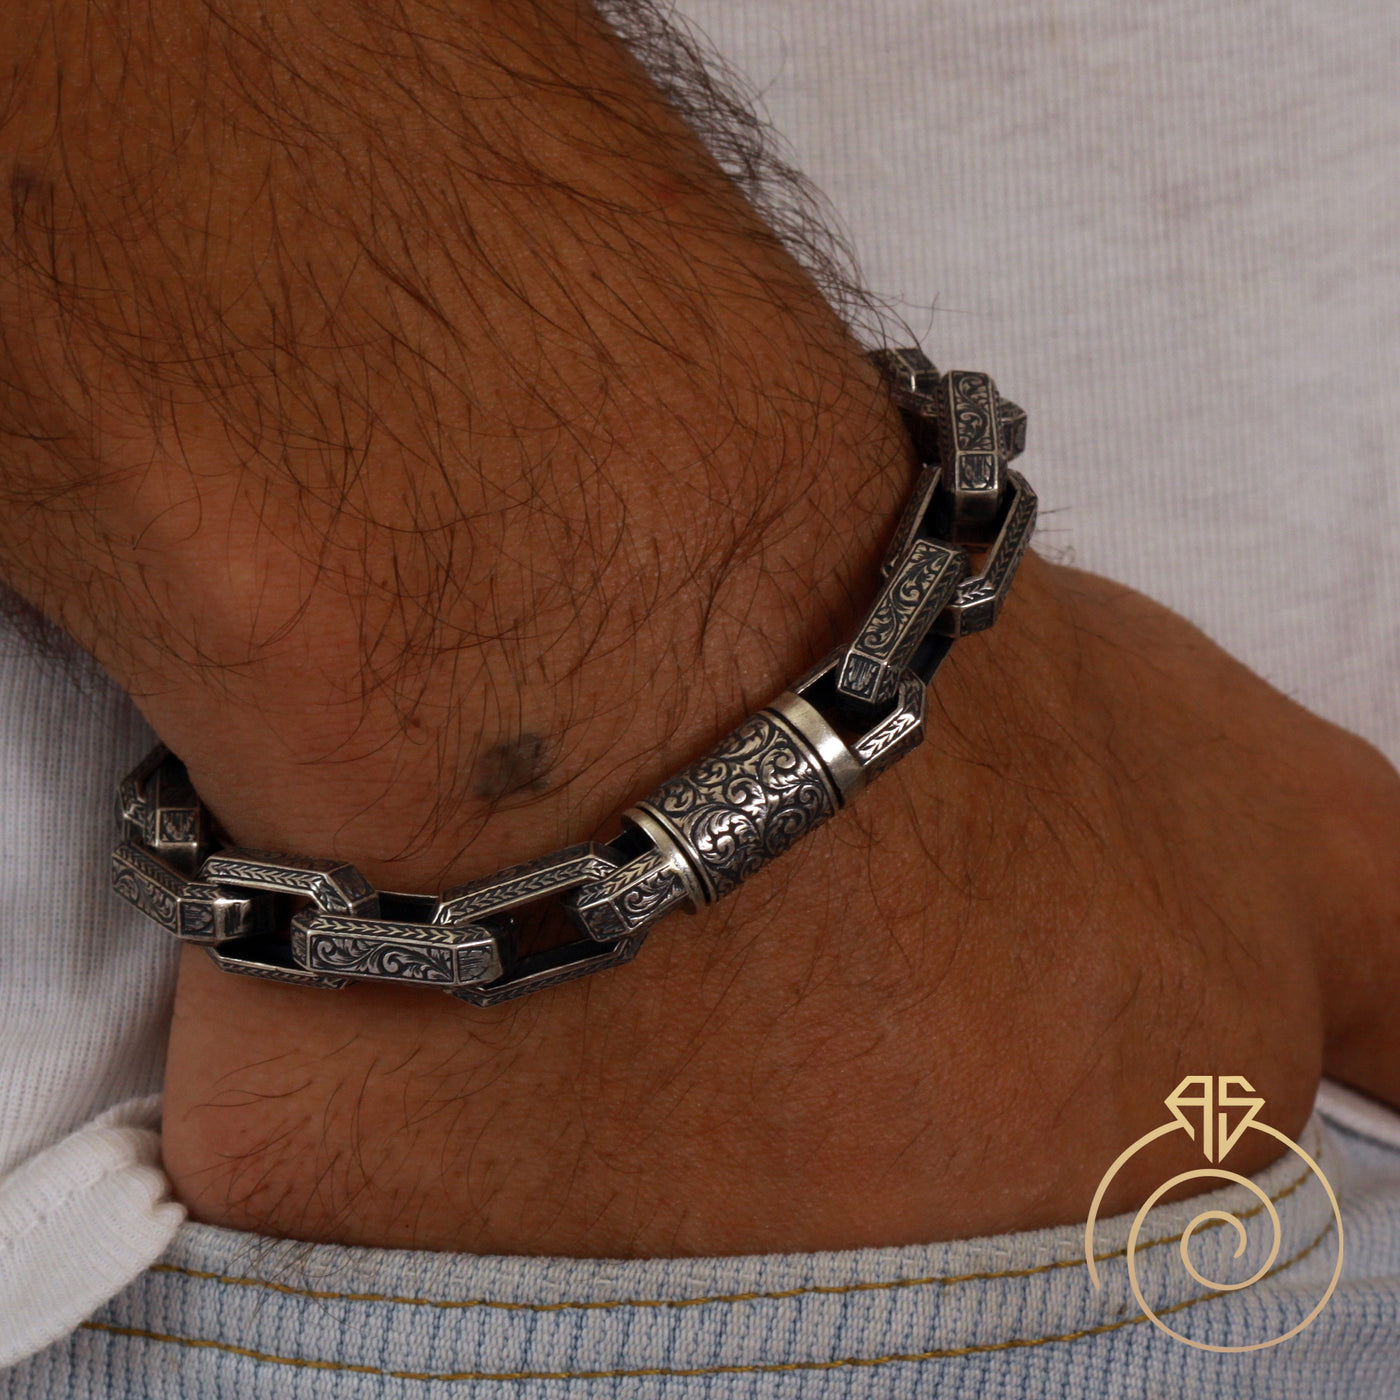 Fluted Chain Bracelet in Sterling Silver, 5mm | David Yurman